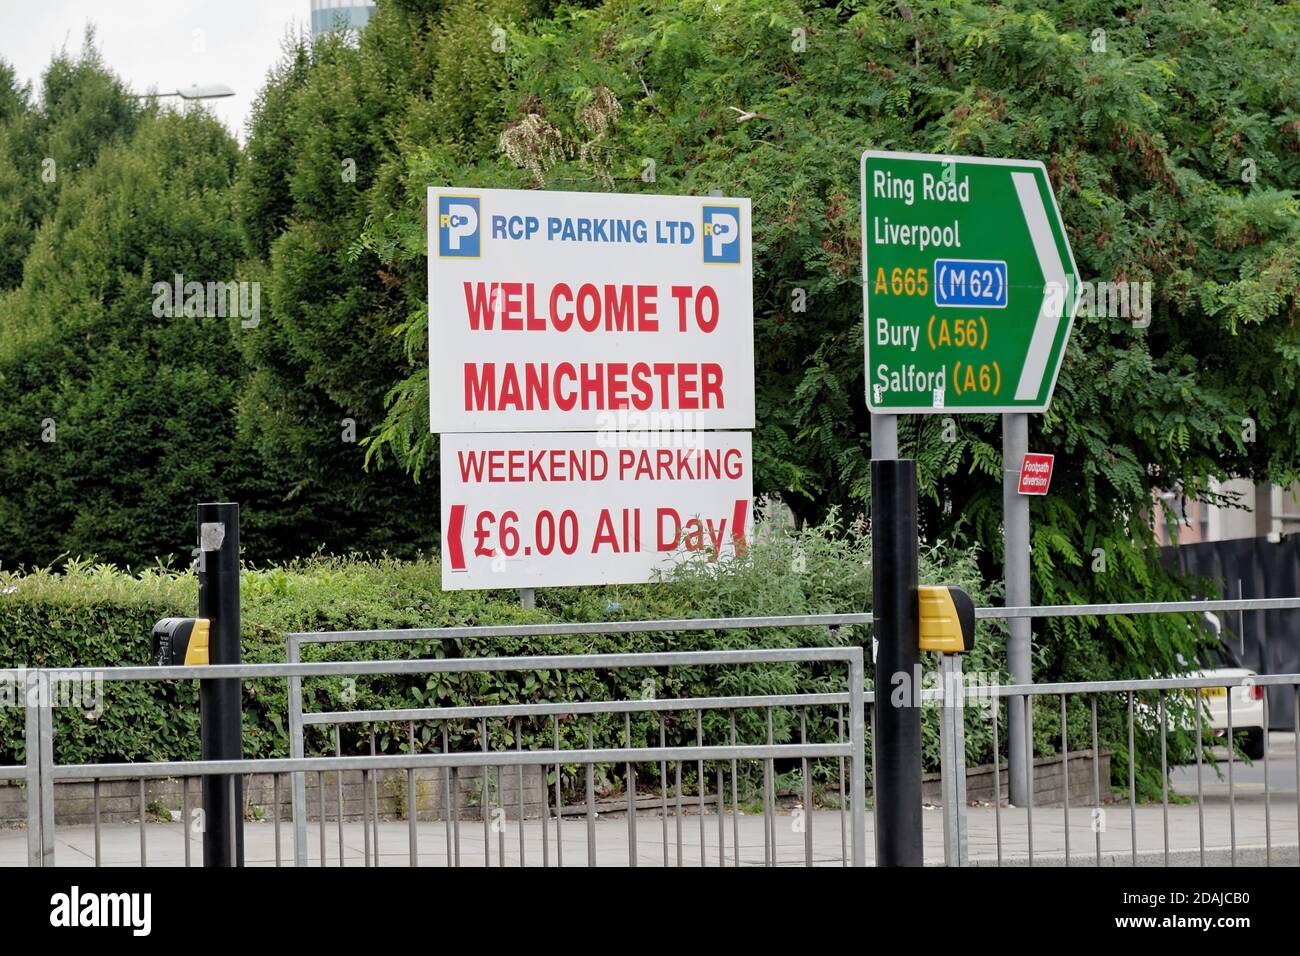 RCP Parking Ltd 'WELCOME TO MANCHESTER' Schild. Gelegen an der Kreuzung von Rochdale Road und A665 Ring Road. Stockfoto